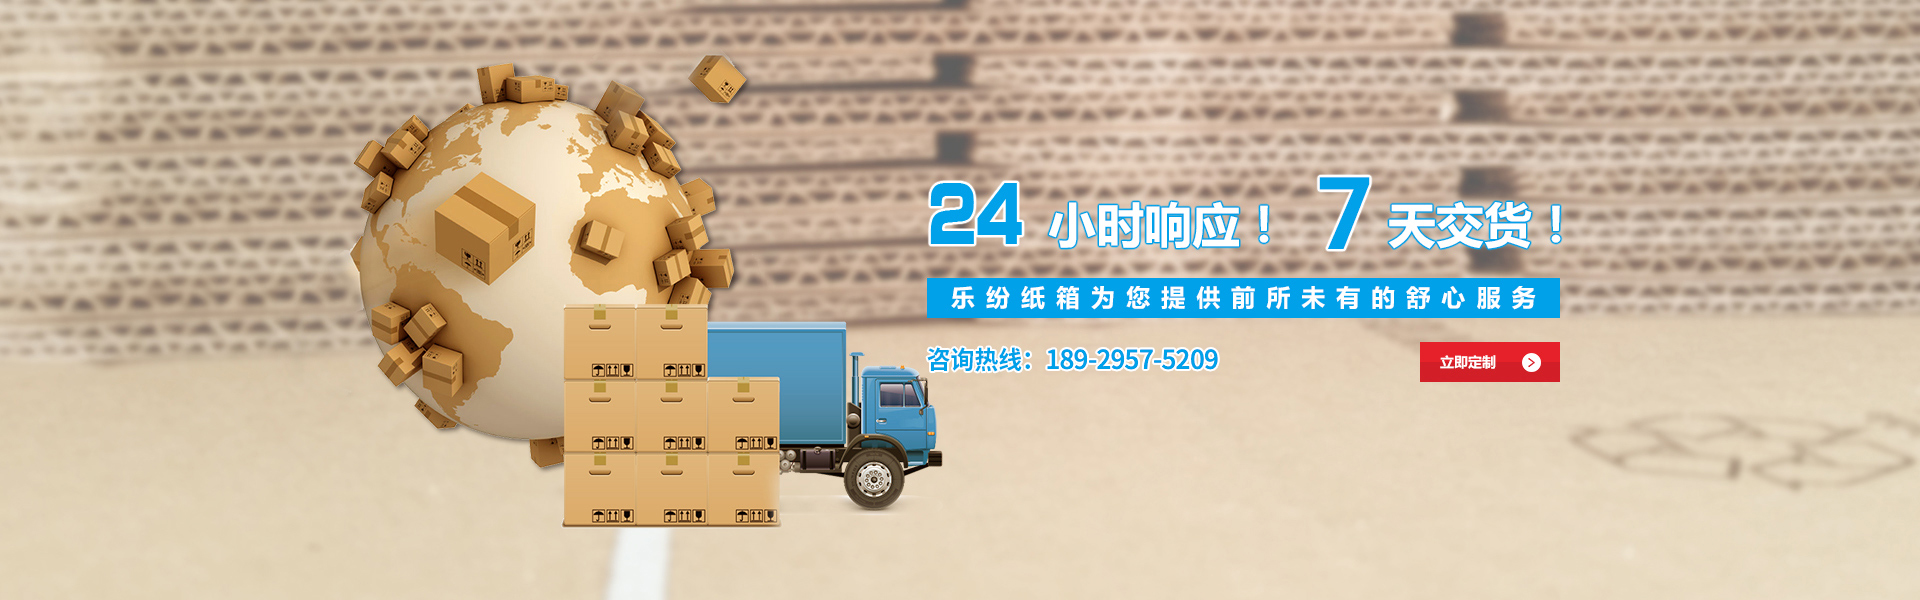 广州乐纷纸箱,为您提供舒心的纸箱定制服务